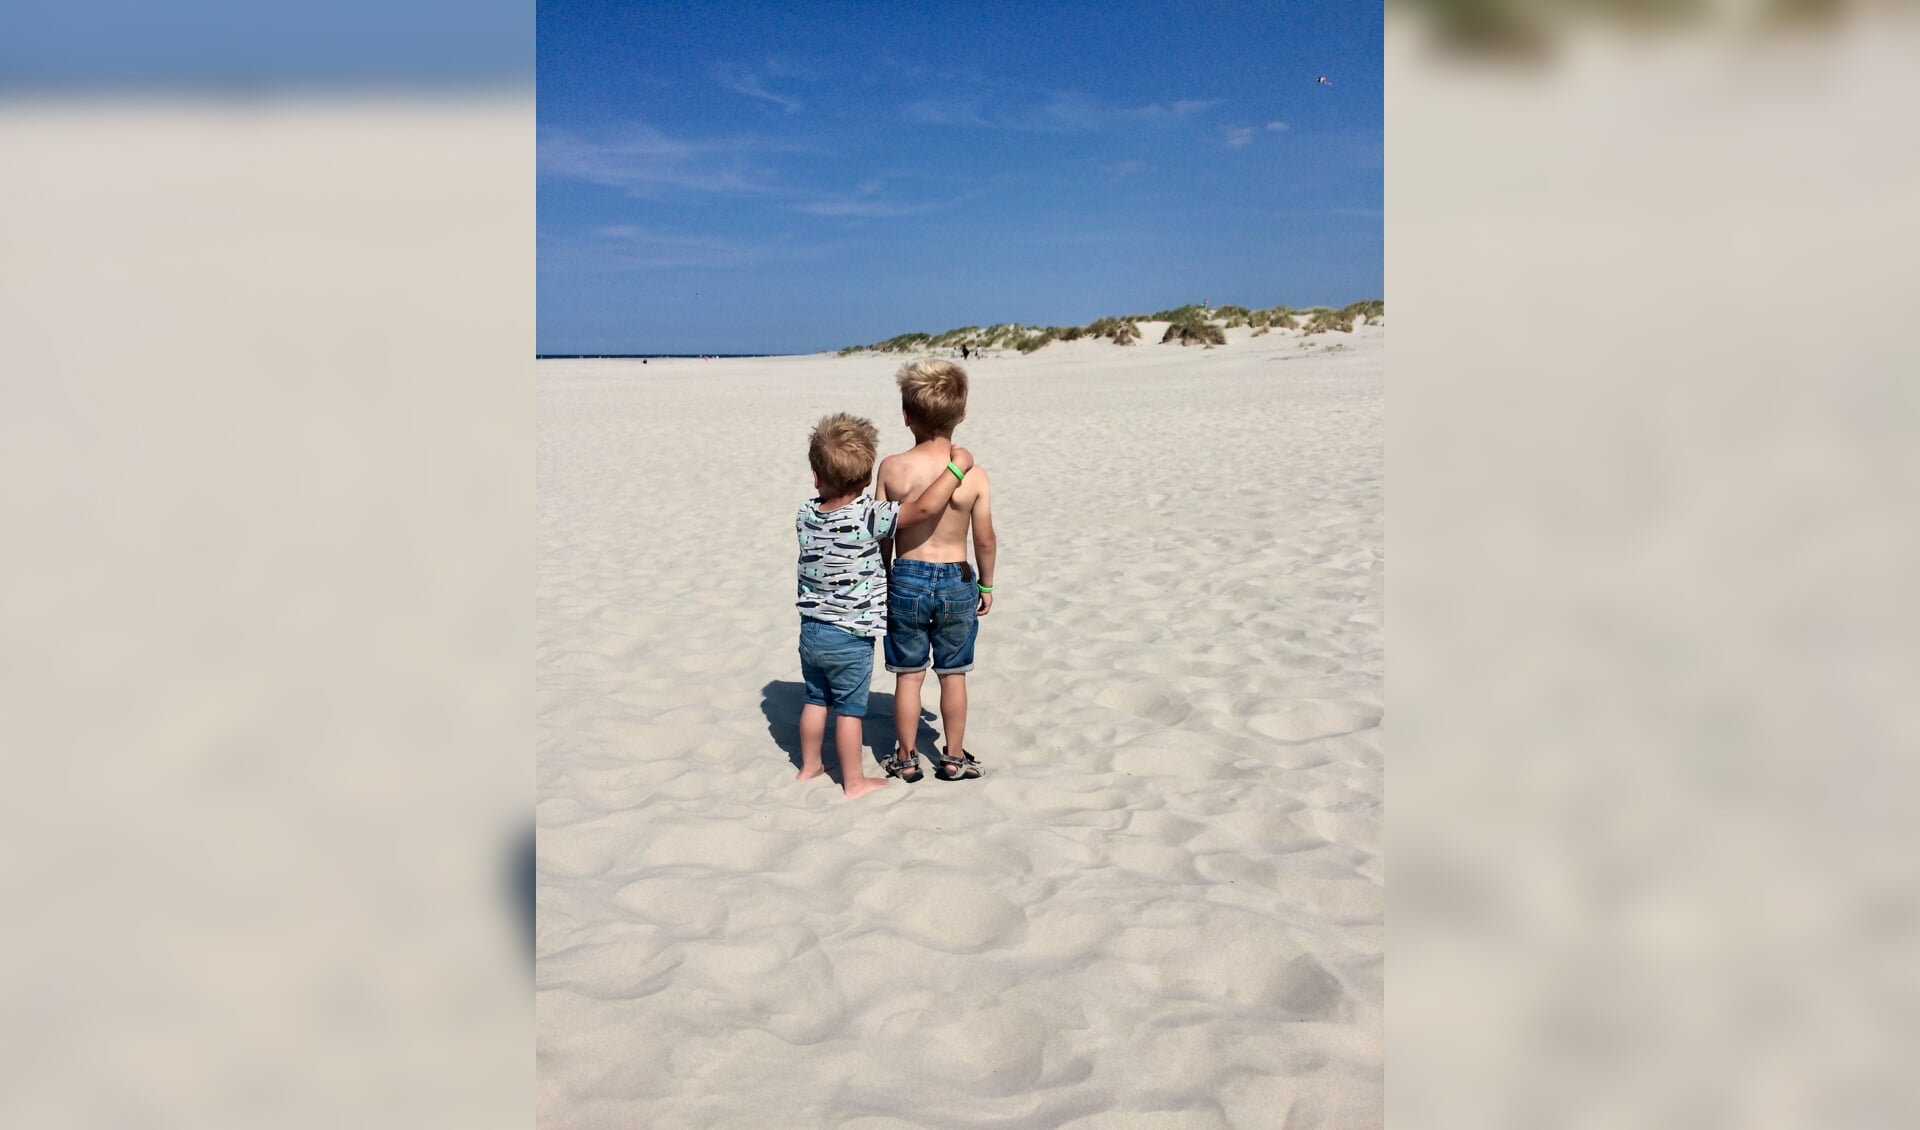 Siem en jort genieten van het mooie strand op Schiermonnikoog. Broederliefde!